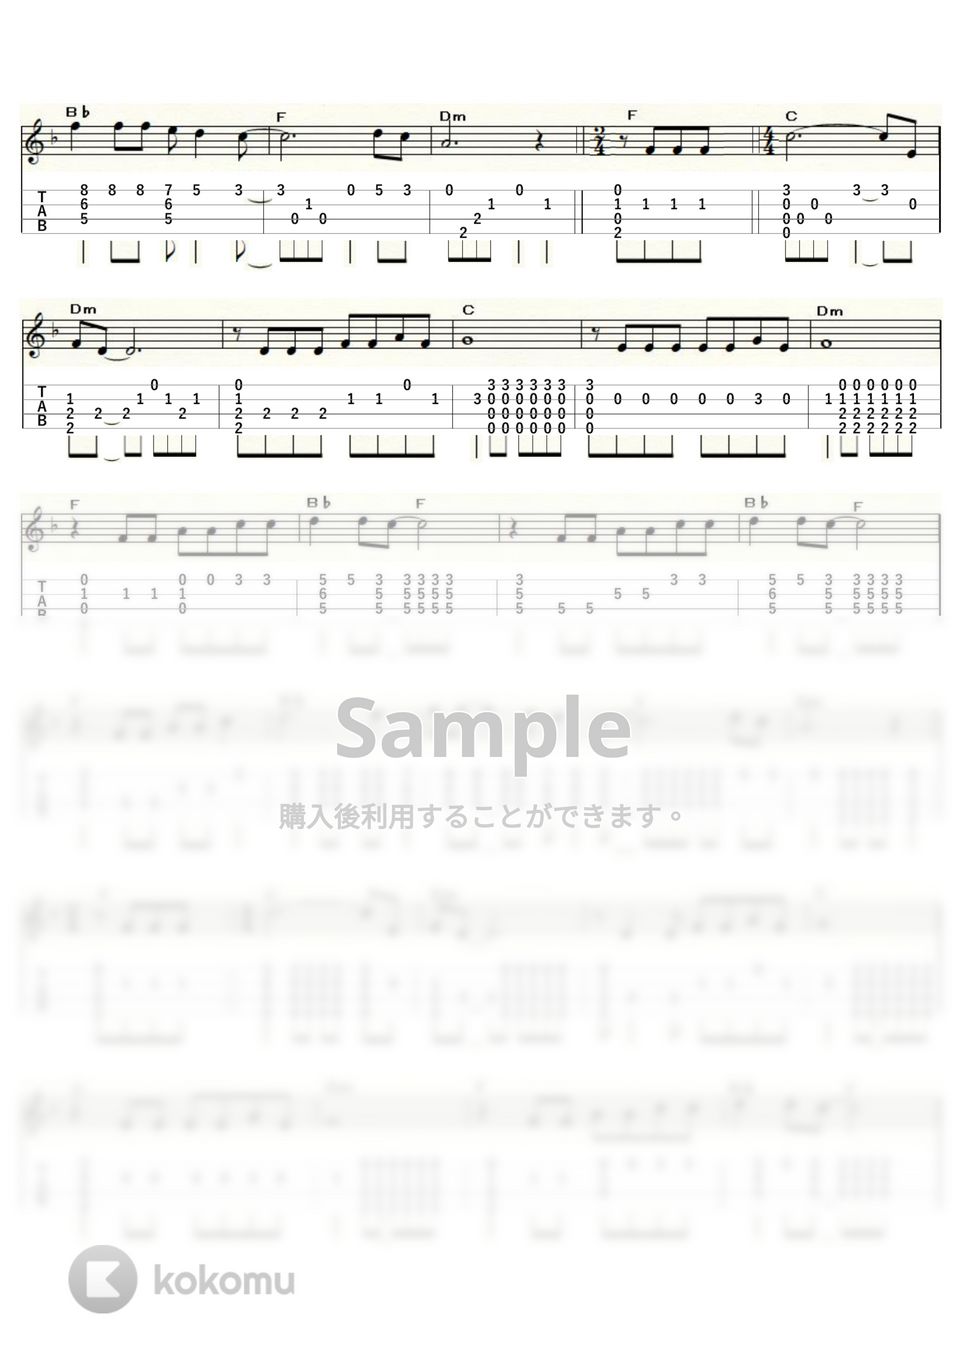 サイモン＆ガーファンクル - THE SOUND OF SILENCE (ｳｸﾚﾚｿﾛ / Low-G / 中級) by ukulelepapa